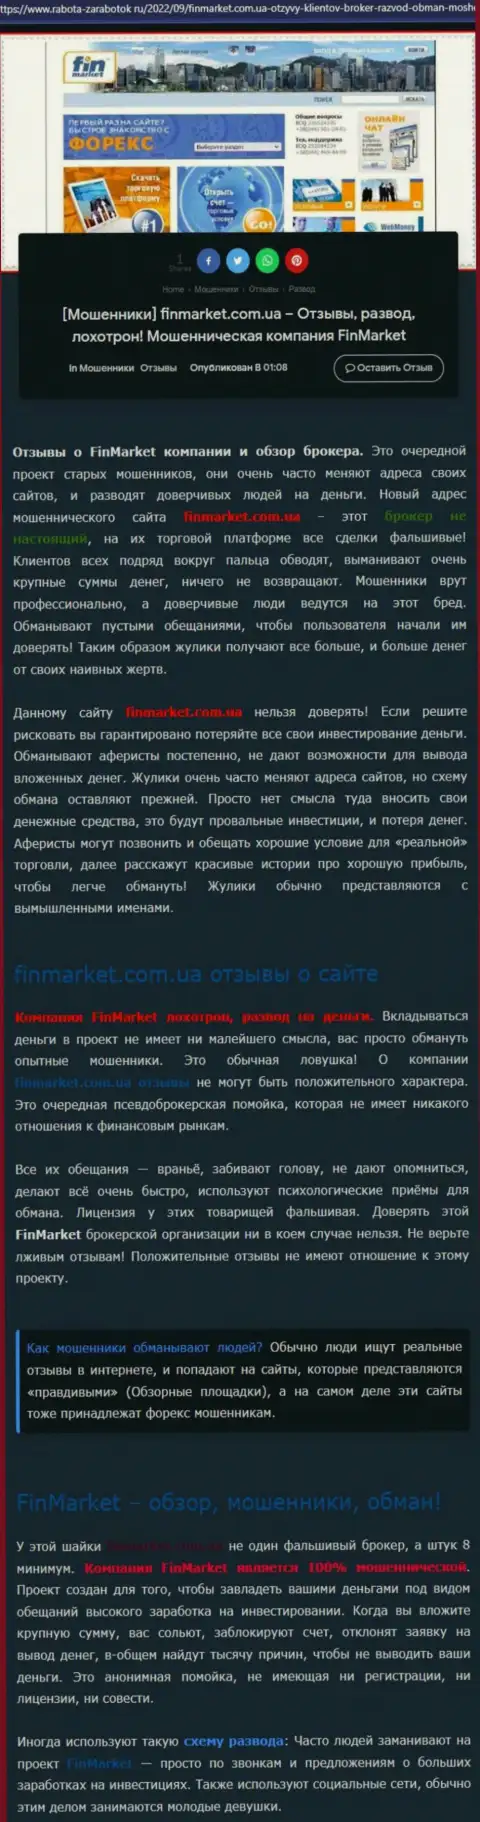 Обзор действий конторы FinMarket - лишают денег цинично (обзор мошеннических действий)